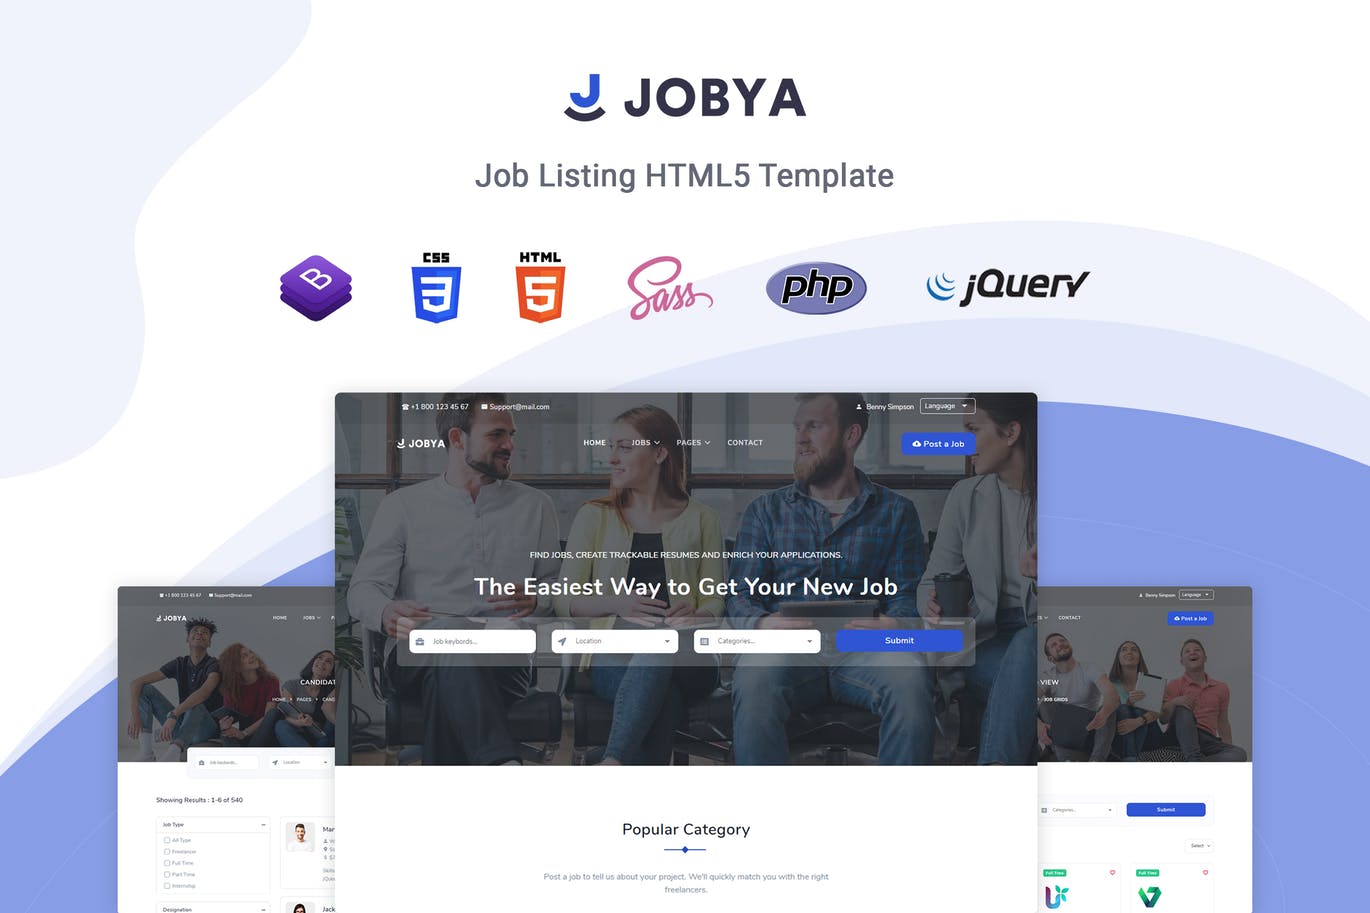 招聘网站/猎头网站设计HTML5模板素材库精选 Jobya – Job Listing HTML5 Template插图